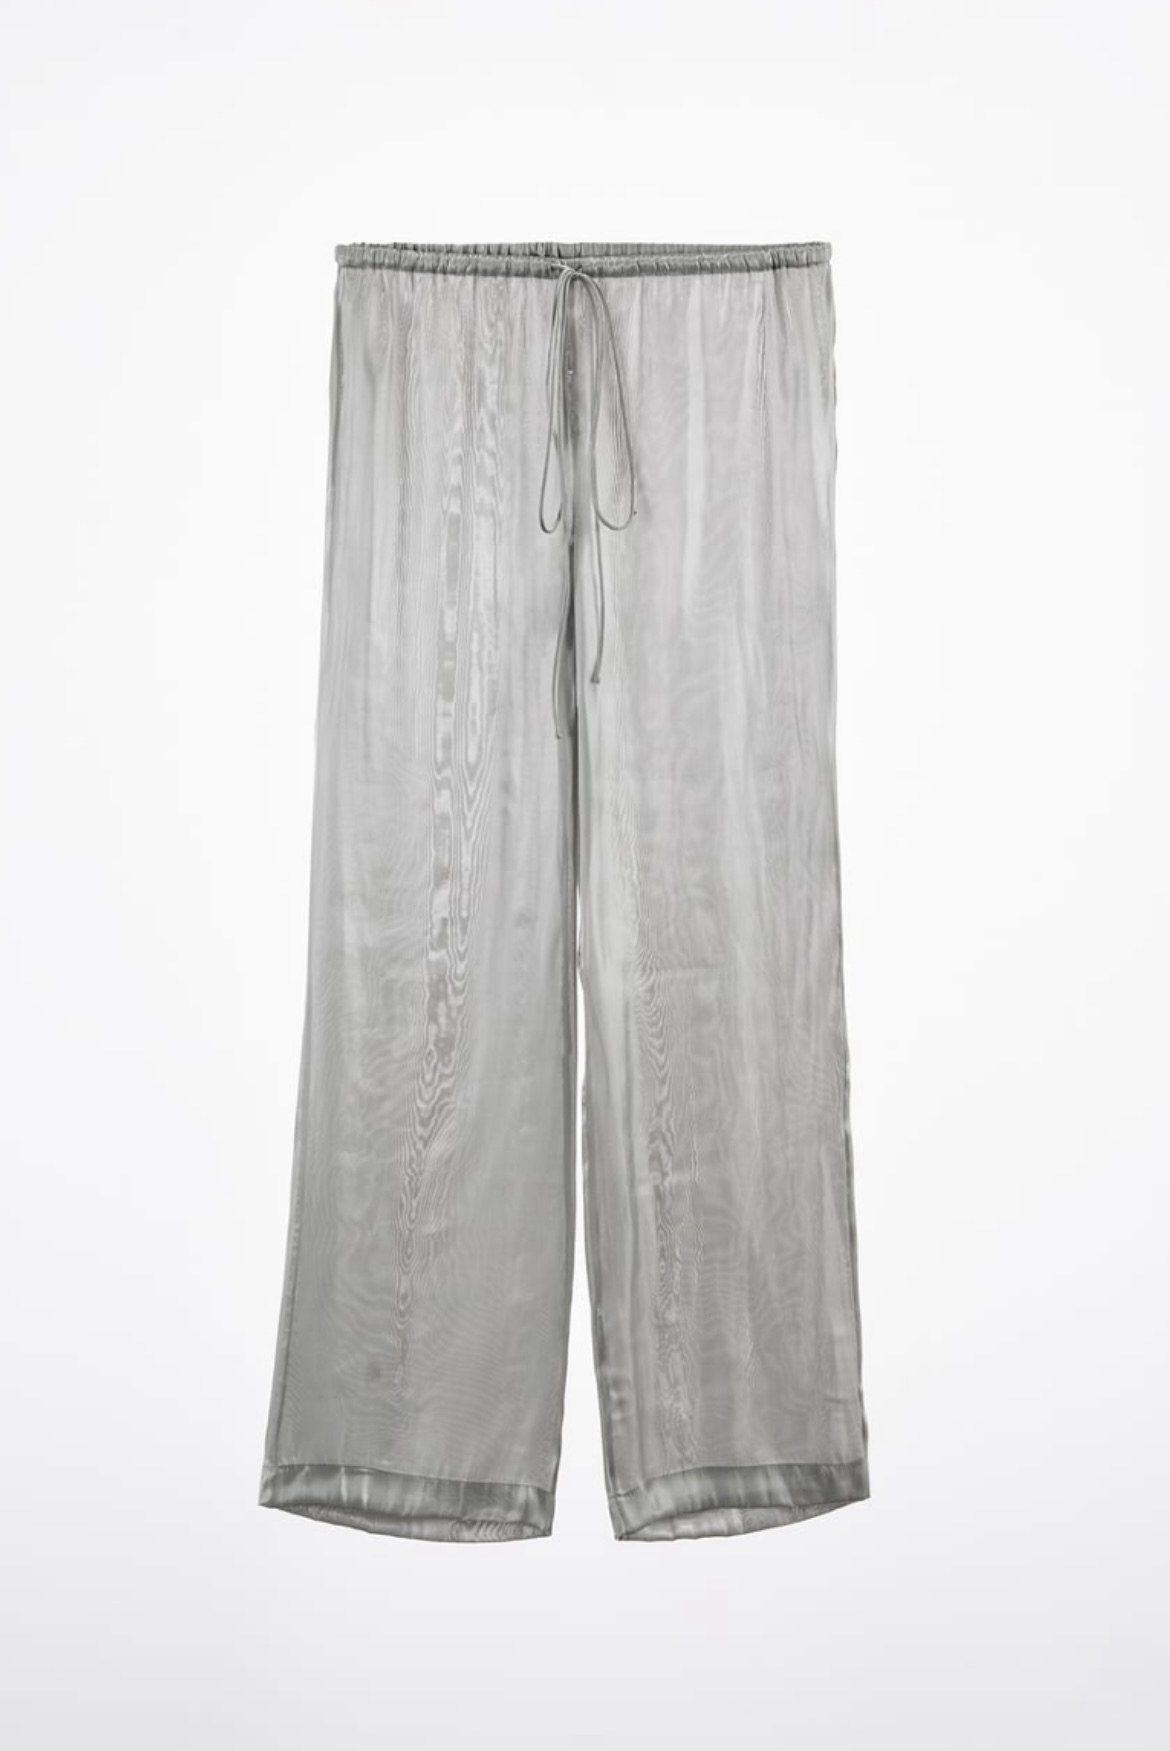 Pantalón plata de Zara (49,45 euros).